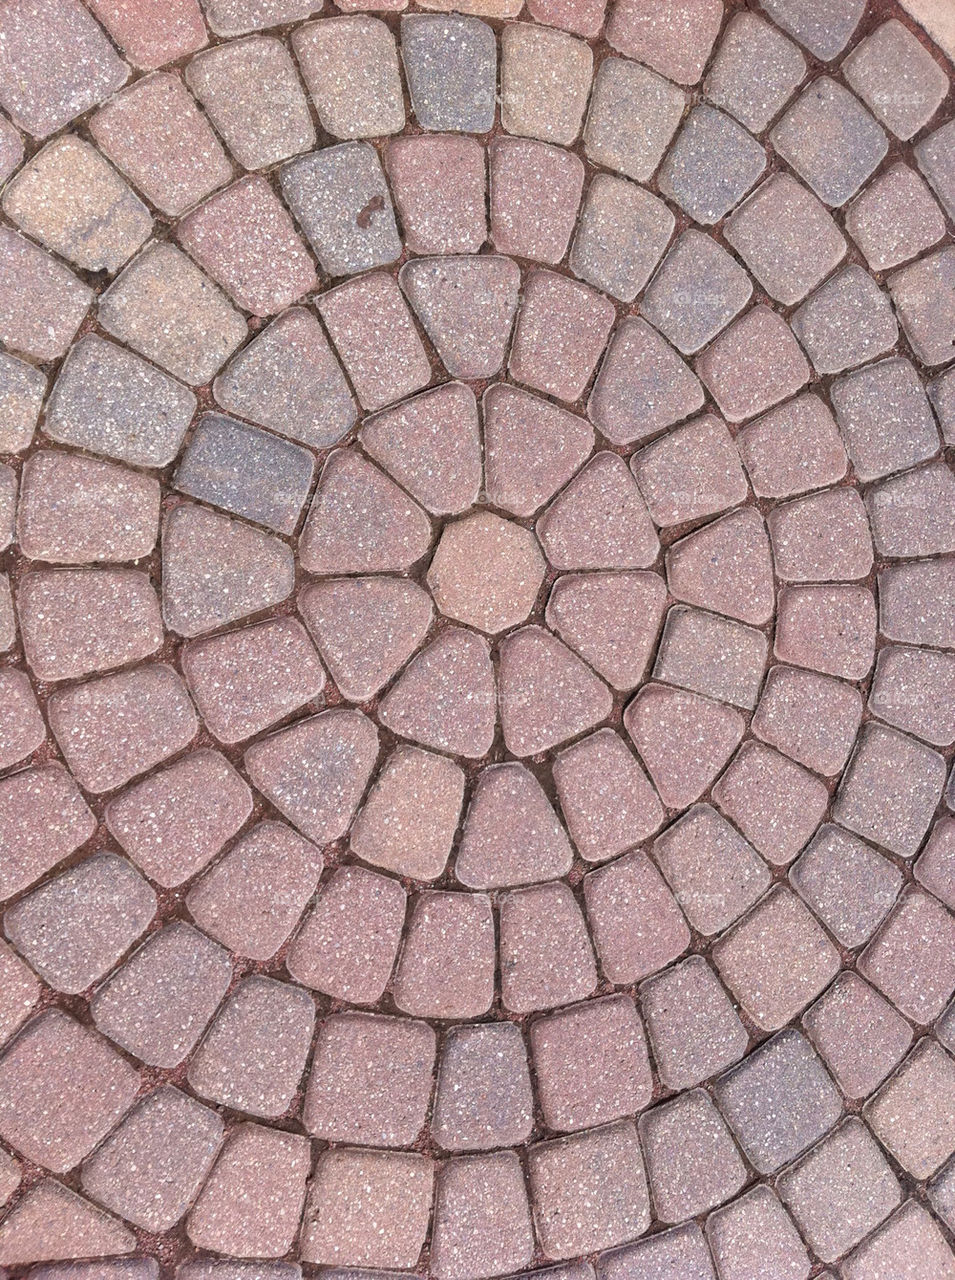 red bricks circle by tplips01